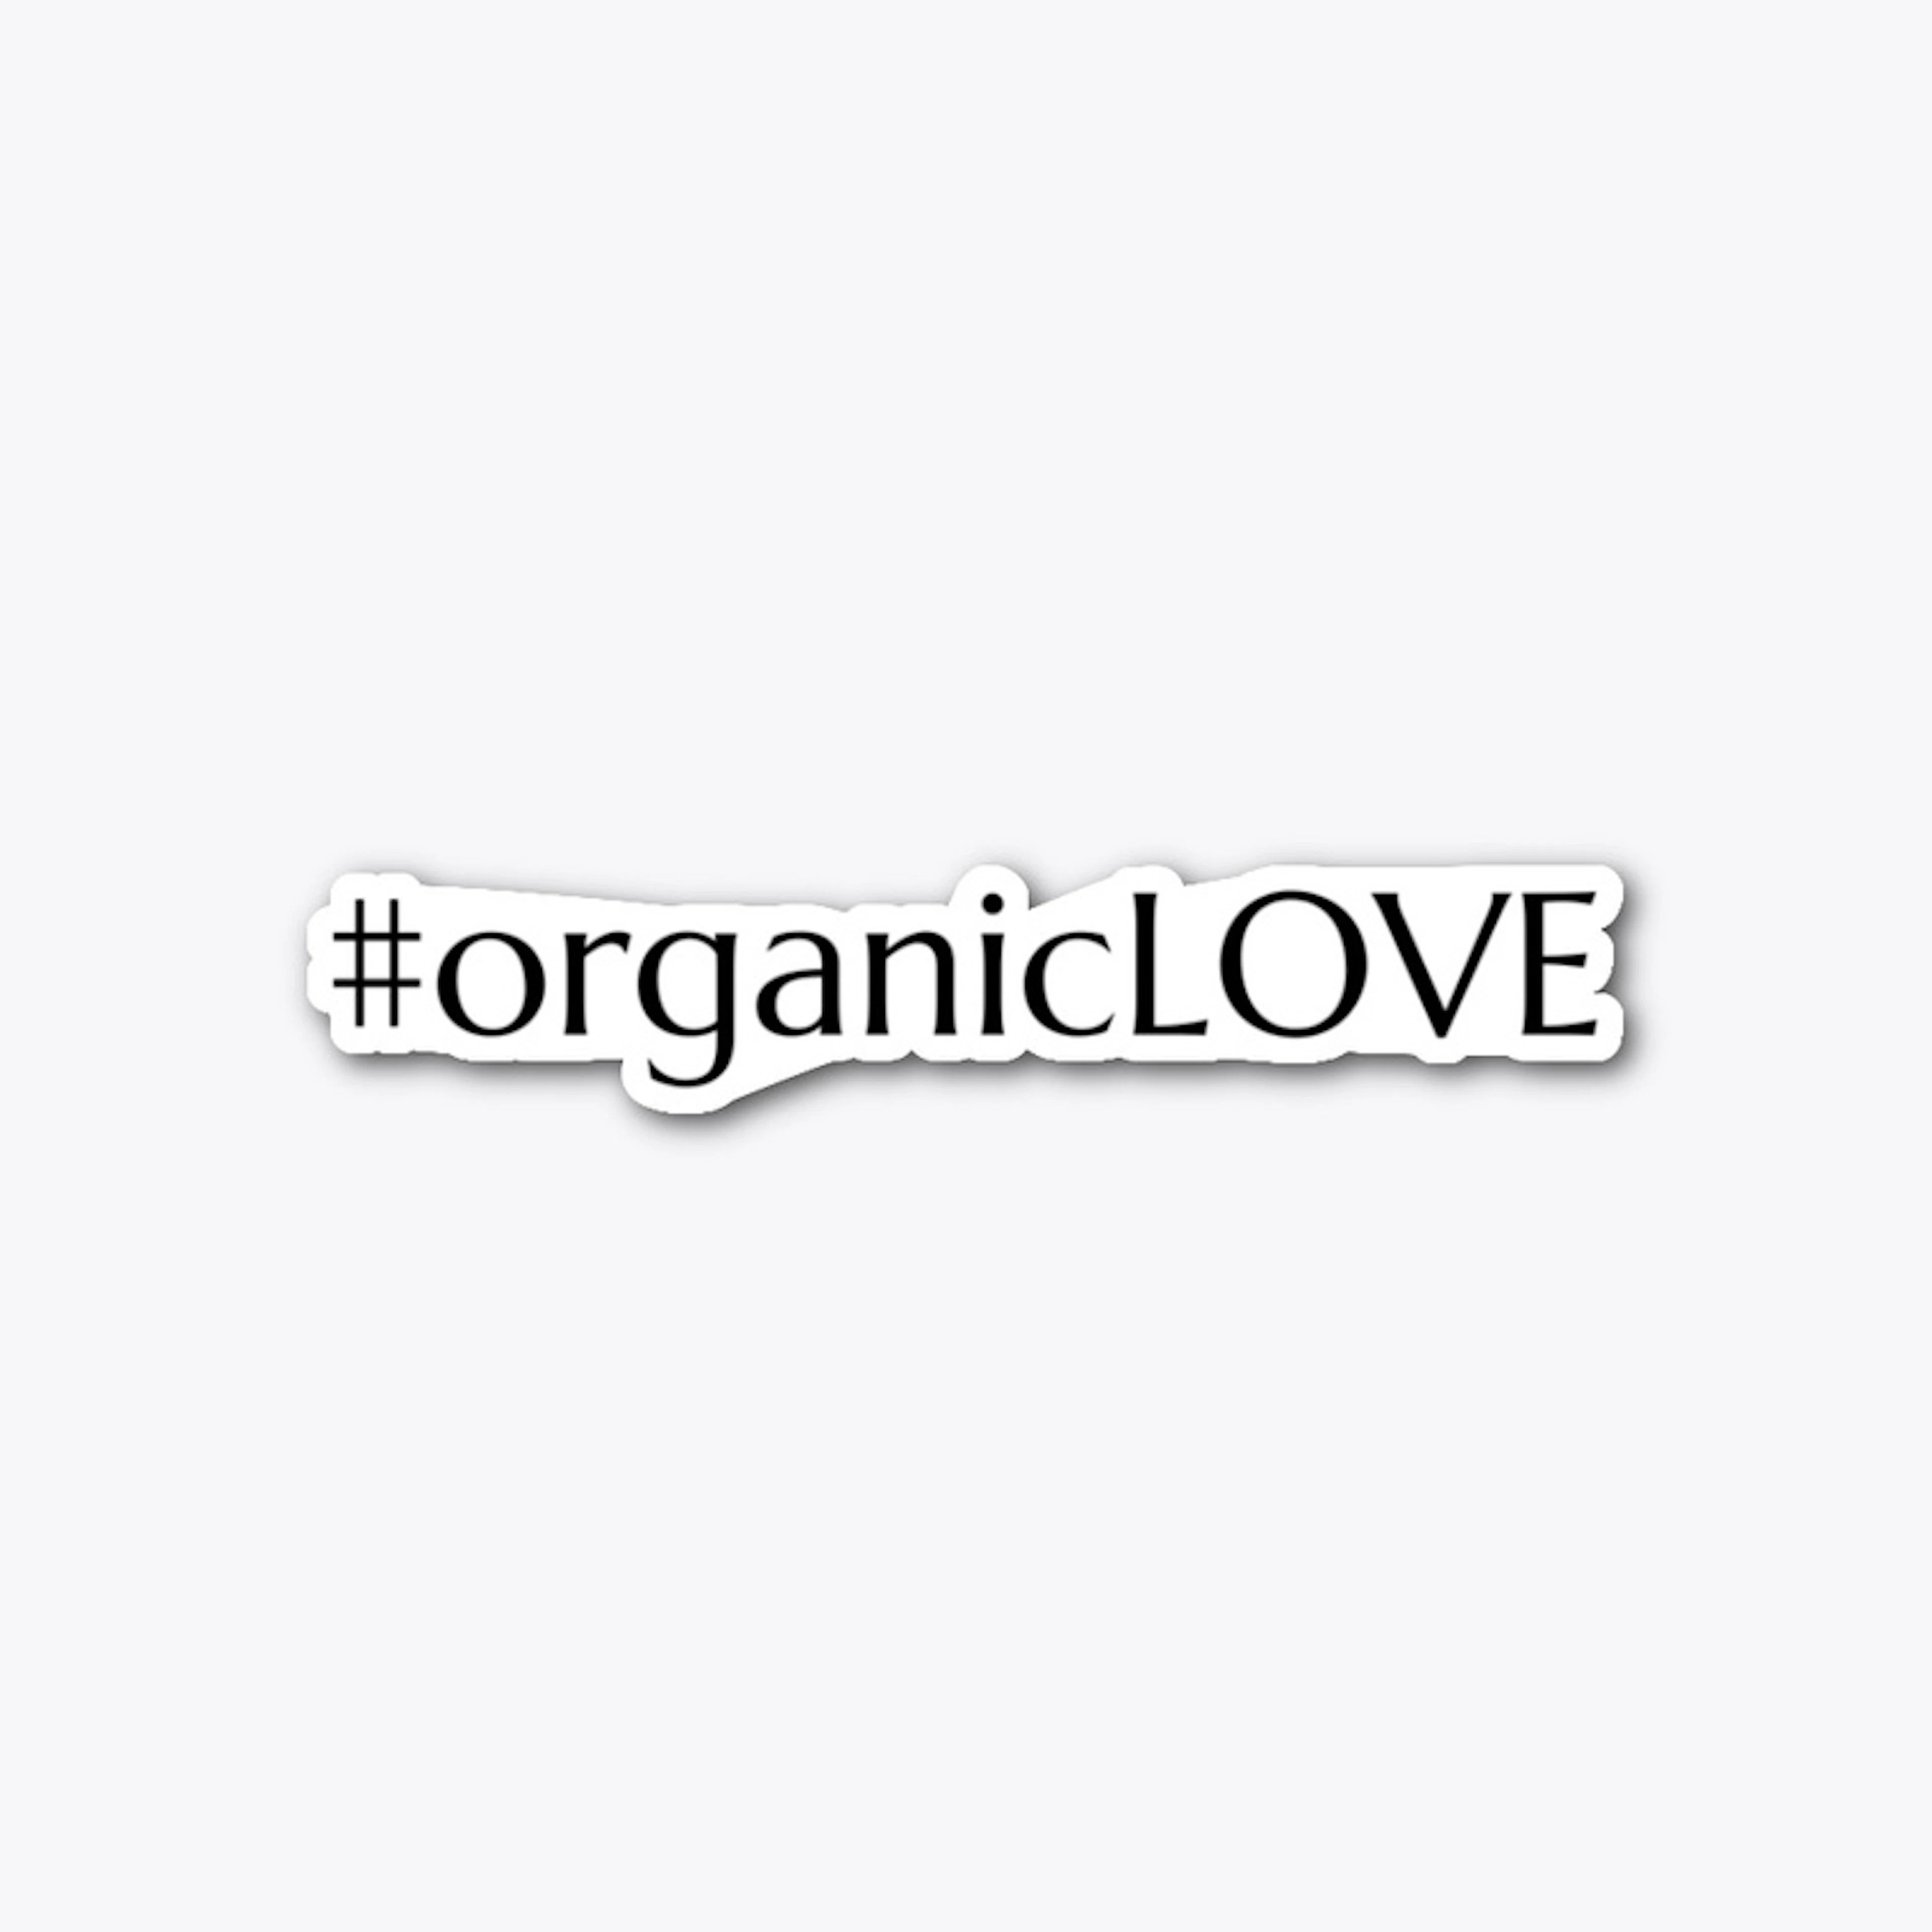 #organicLOVE